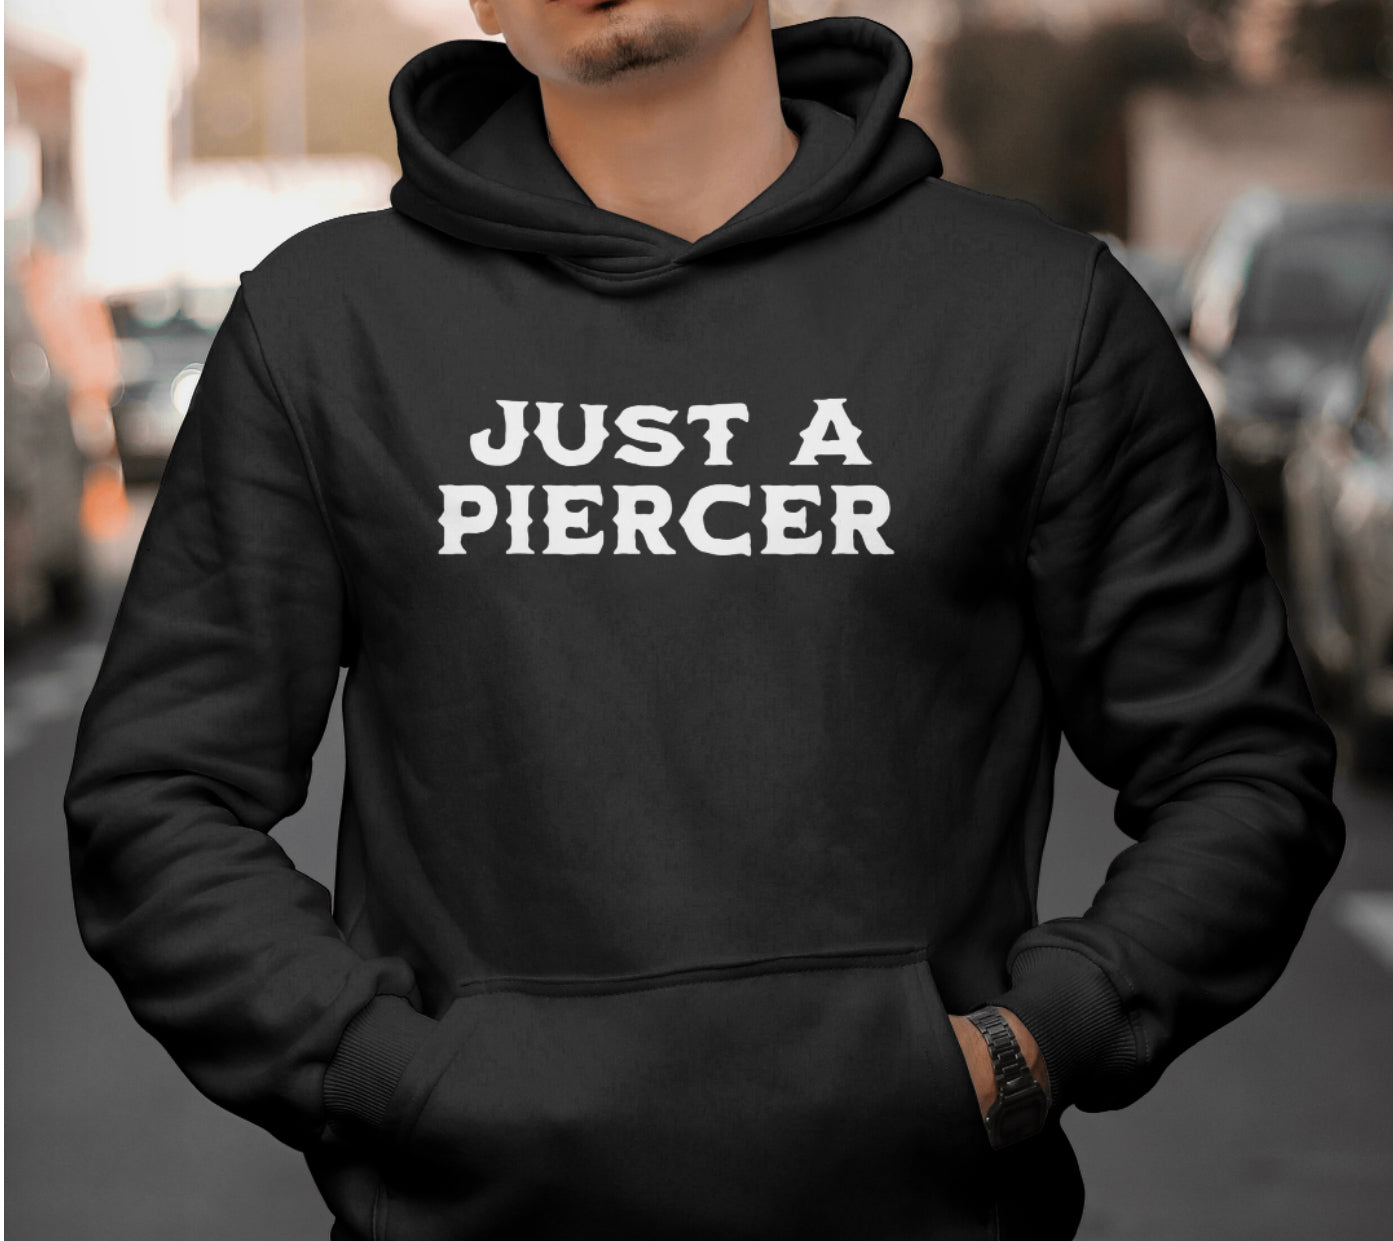 “Just a Piercer” Shirt